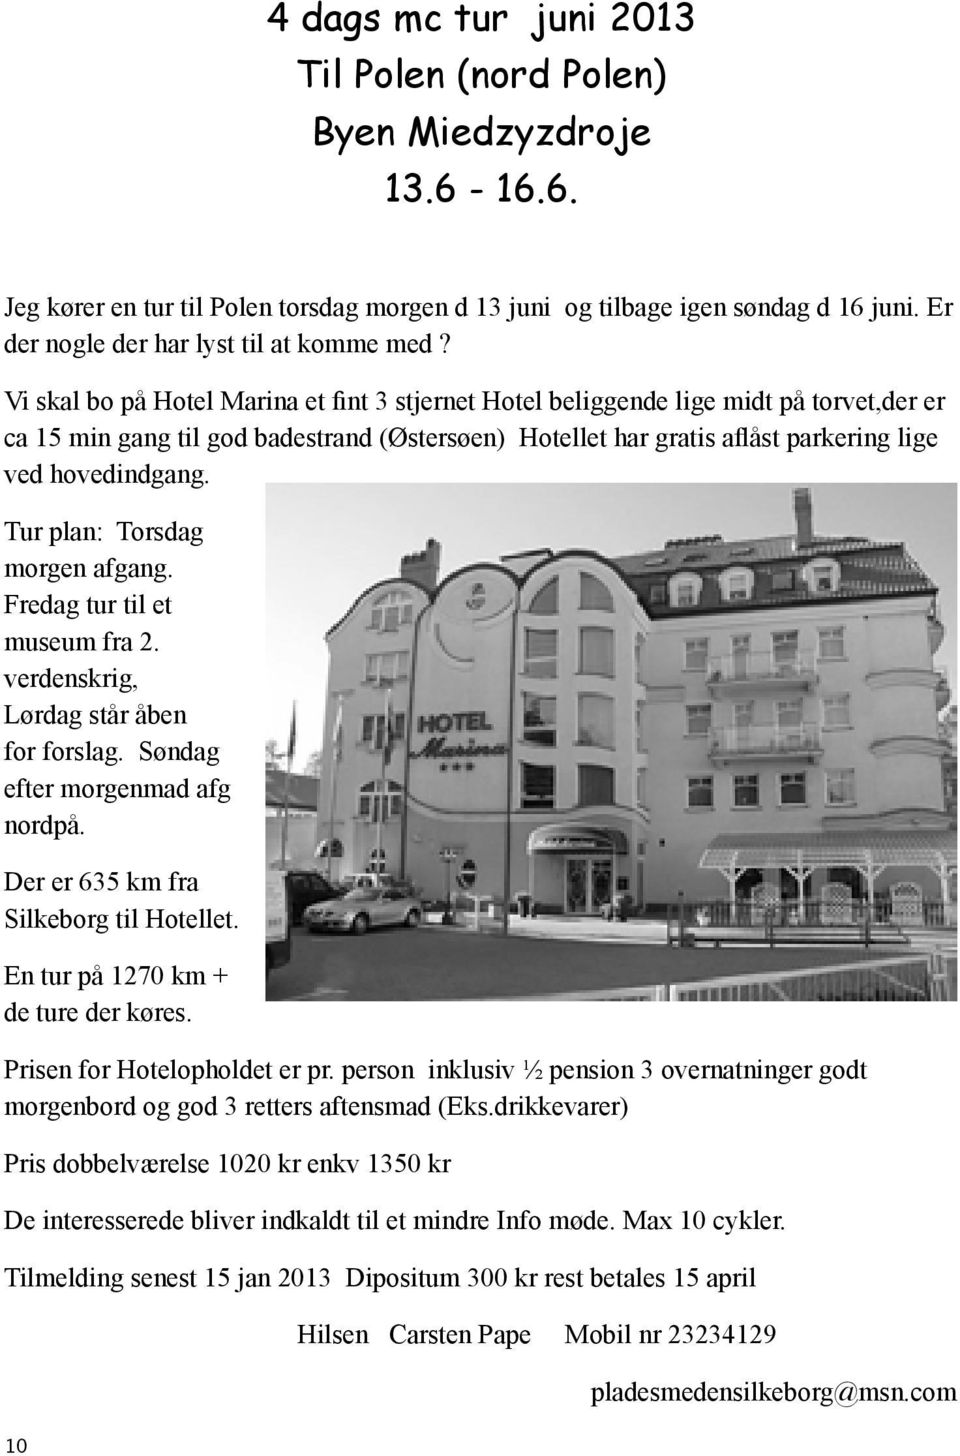 Vi skal bo på Hotel Marina et fint 3 stjernet Hotel beliggende lige midt på torvet,der er ca 15 min gang til god badestrand (Østersøen) Hotellet har gratis aflåst parkering lige ved hovedindgang.